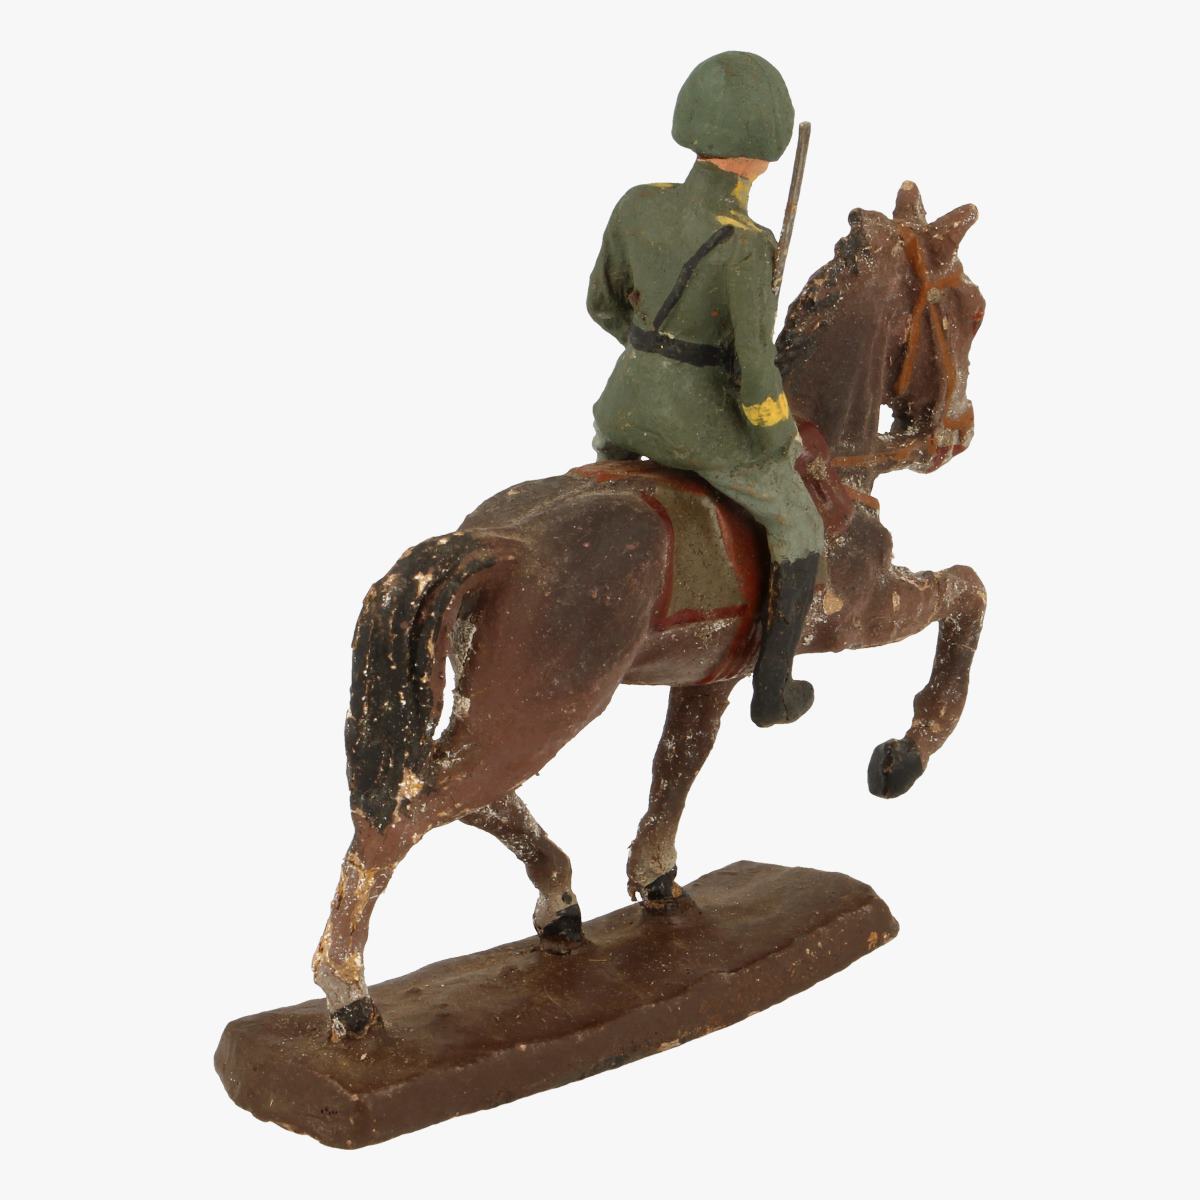 Afbeeldingen van Elastolin soldaatje op paard fabr: Elastolin Germany